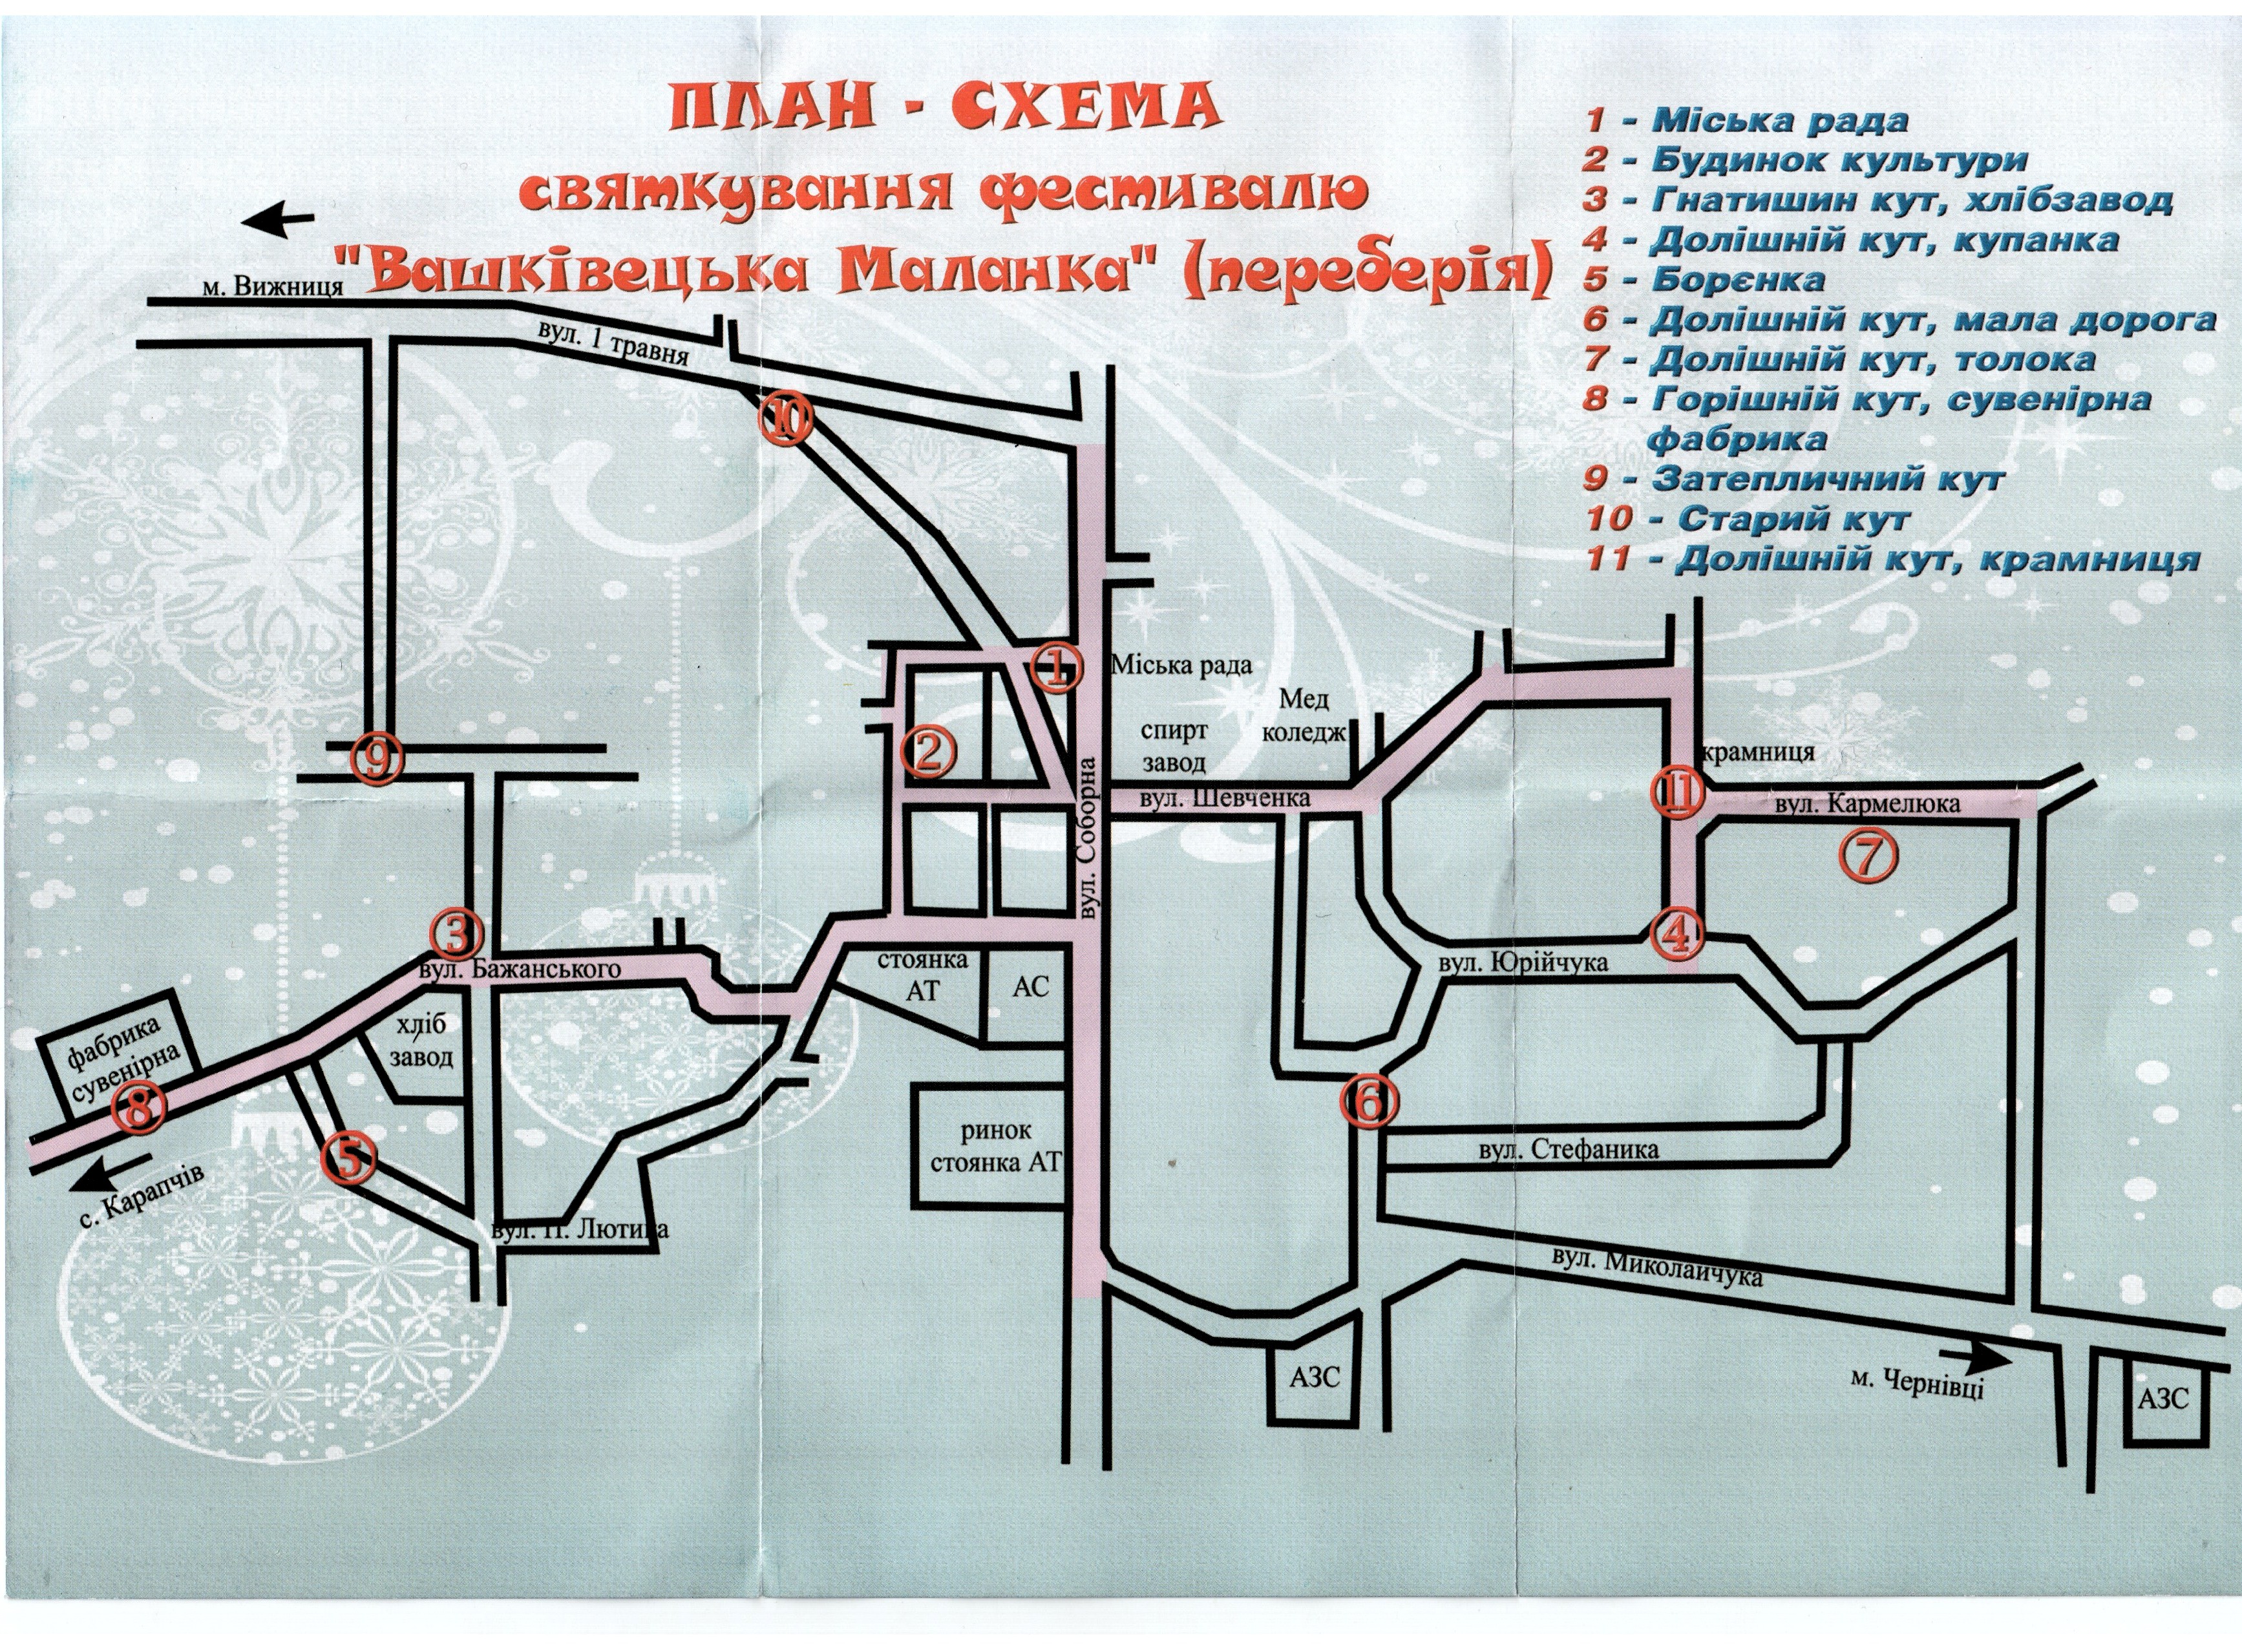 План - схема празднования фестиваля "Вашкивецкая Маланка" (переберия)